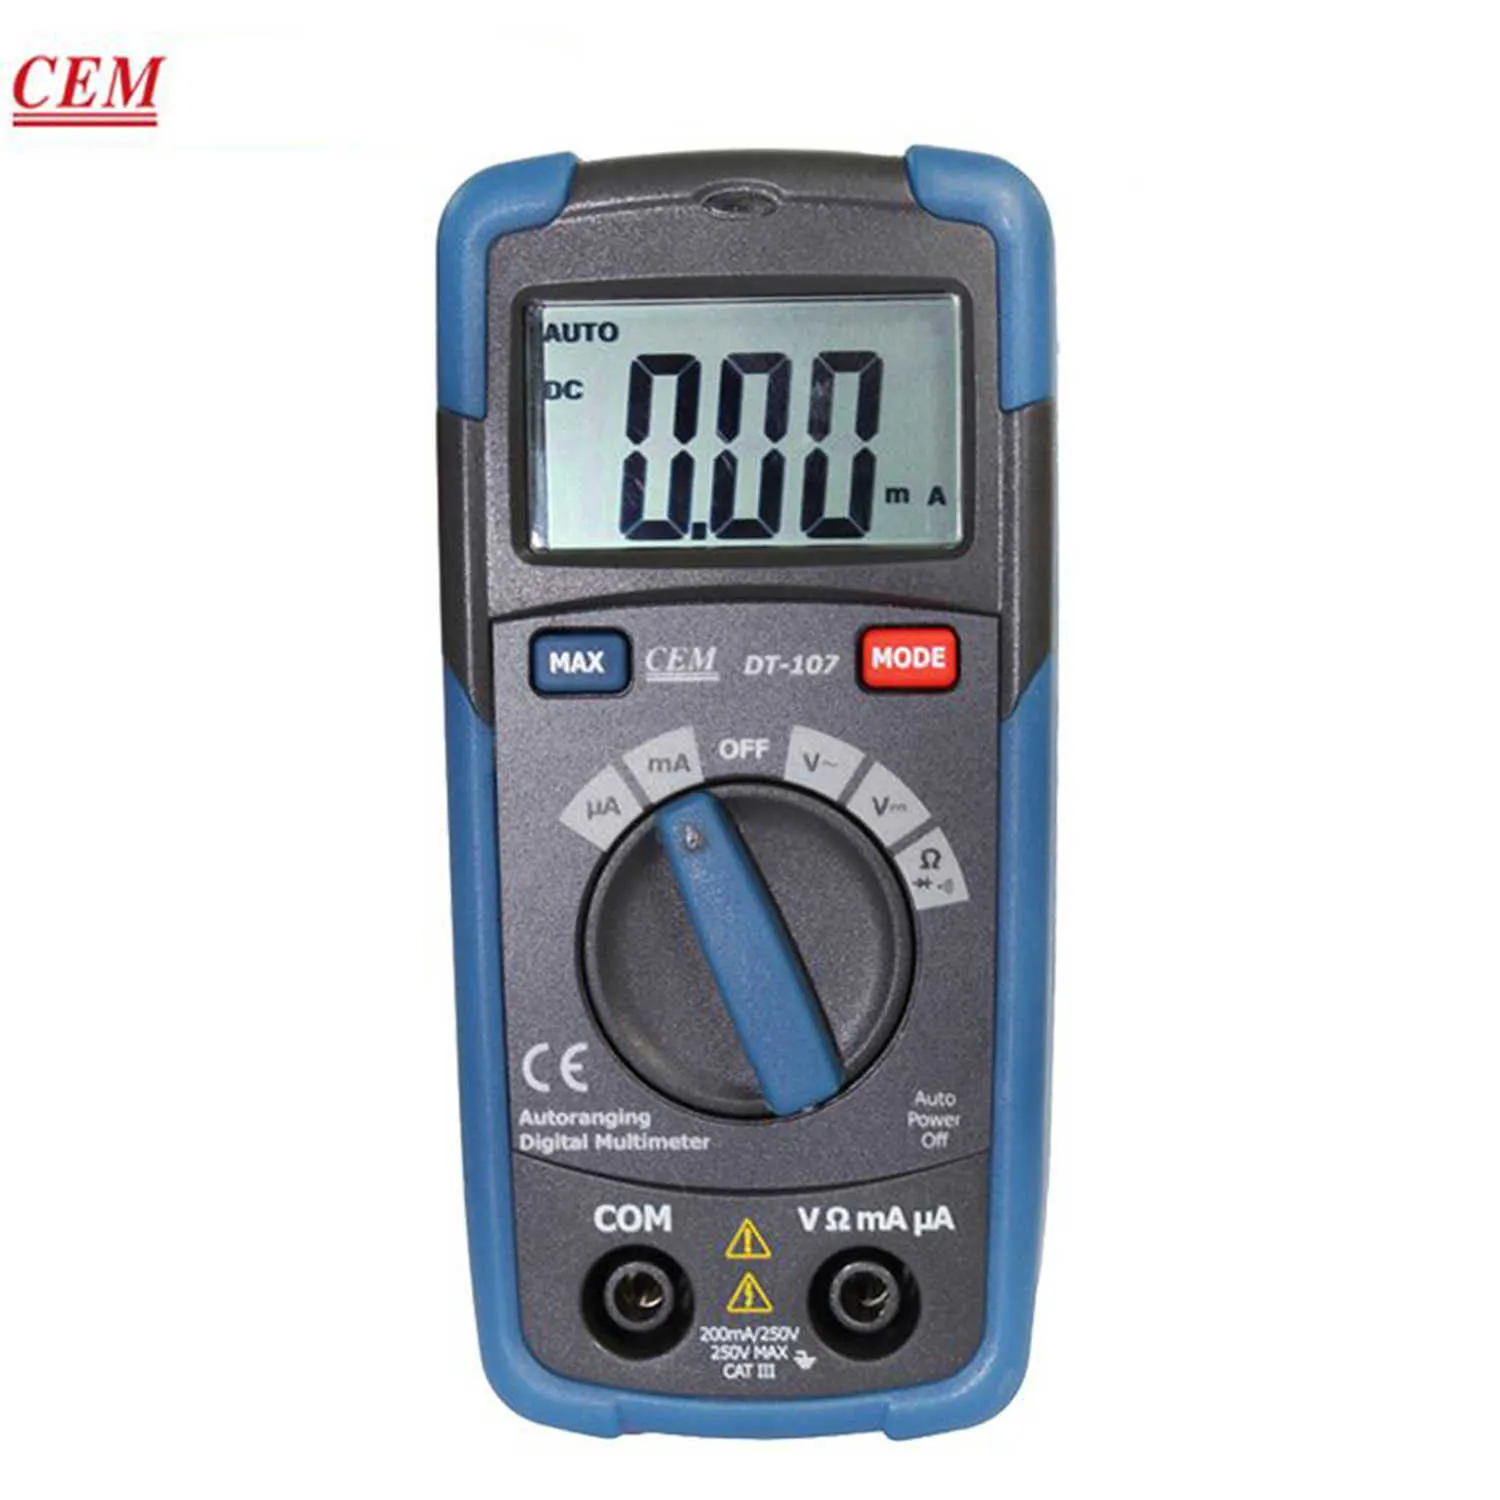 O multímetro digital de bolso CEM DT-107 fornece medição automática multifuncional 3 em 1 em 1 teste E-testers Tipo de proteção de proteção completa do tipo de bolso.